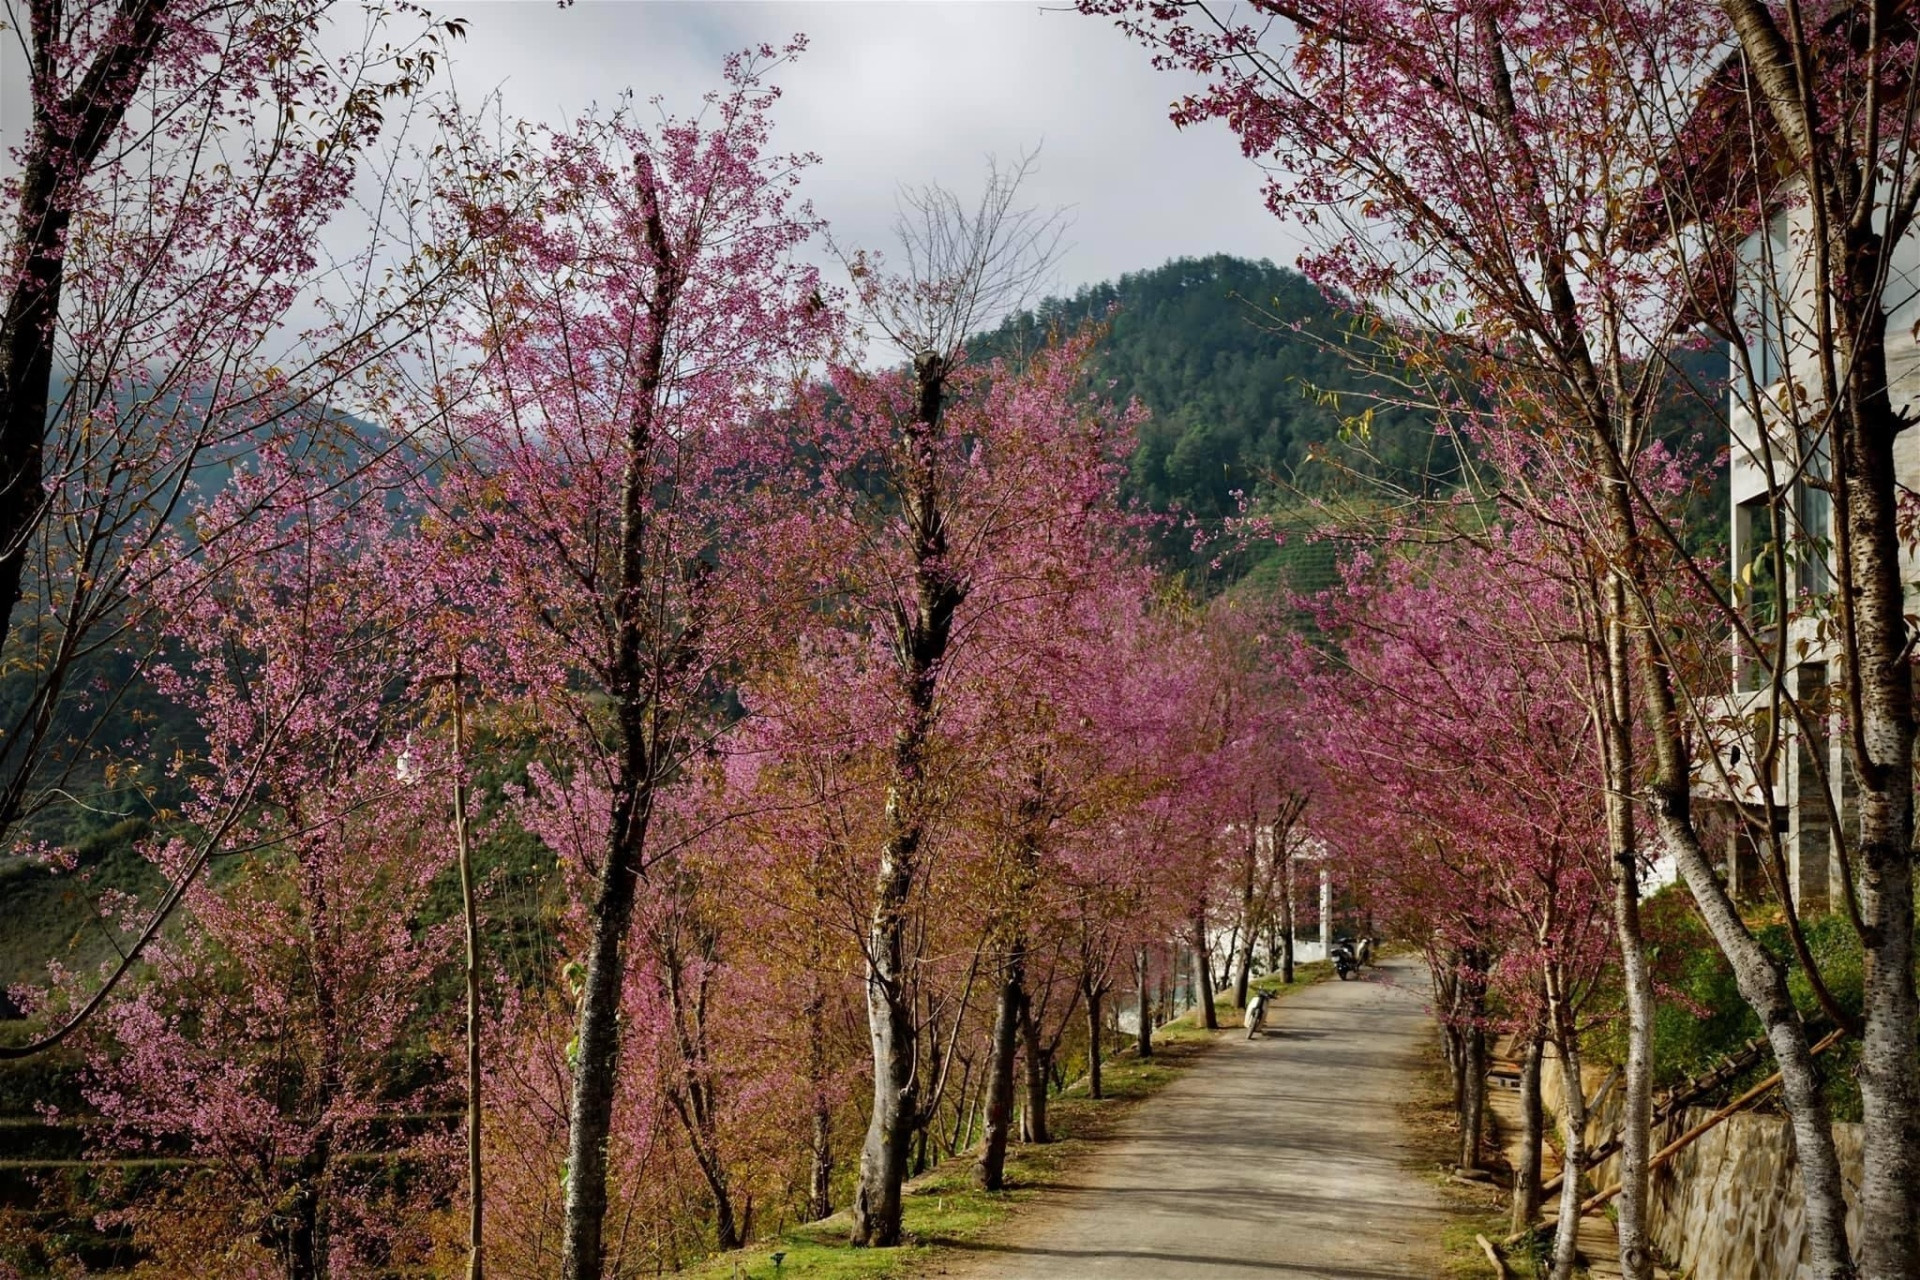 Chiêm ngưỡng sắc hoa tớ dày nhuộm hồng núi rừng Mù Cang Chải - 6